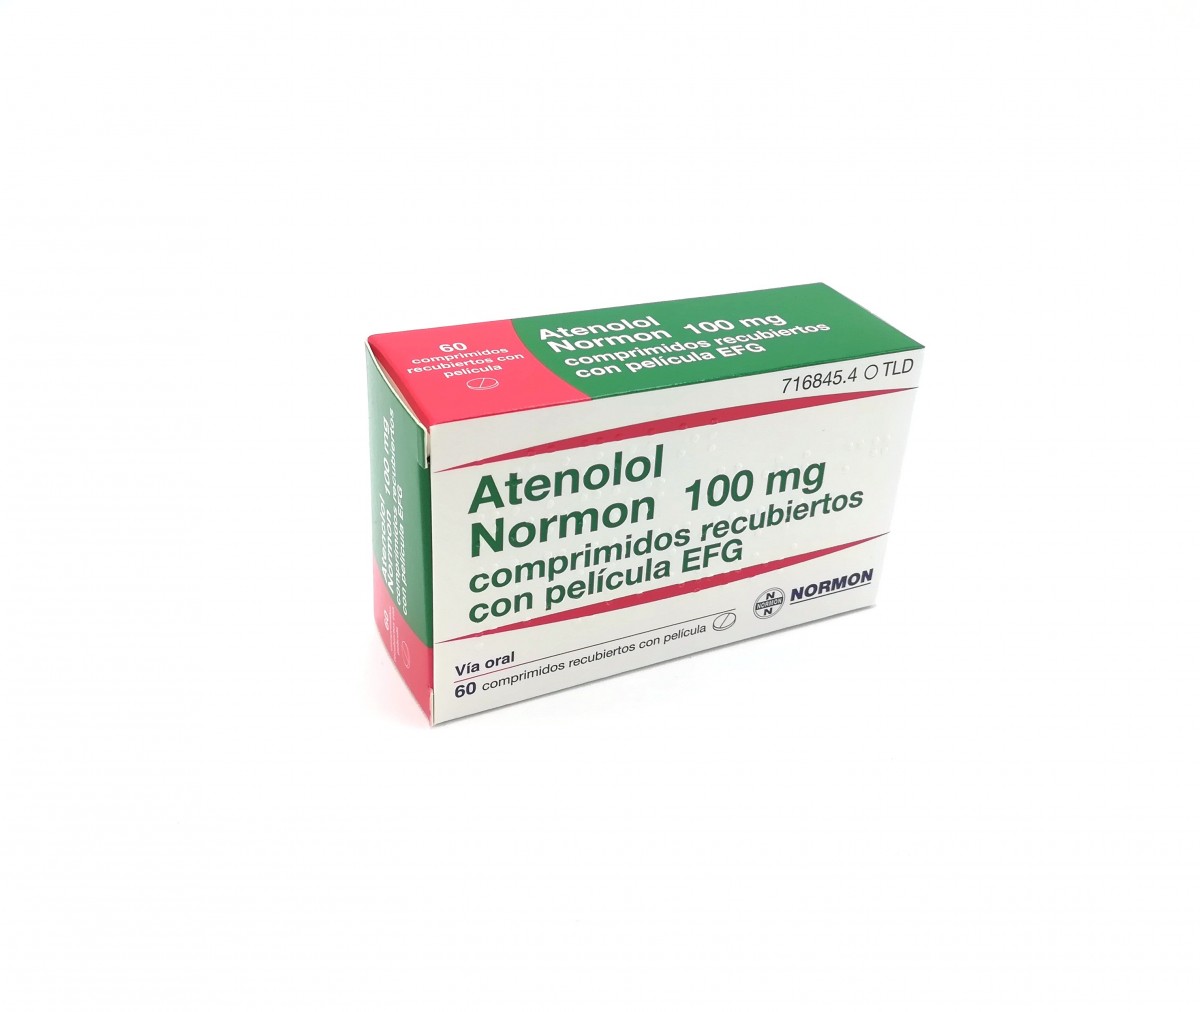 ATENOLOL NORMON 100 mg COMPRIMIDOS RECUBIERTOS EFG, 60 comprimidos fotografía del envase.